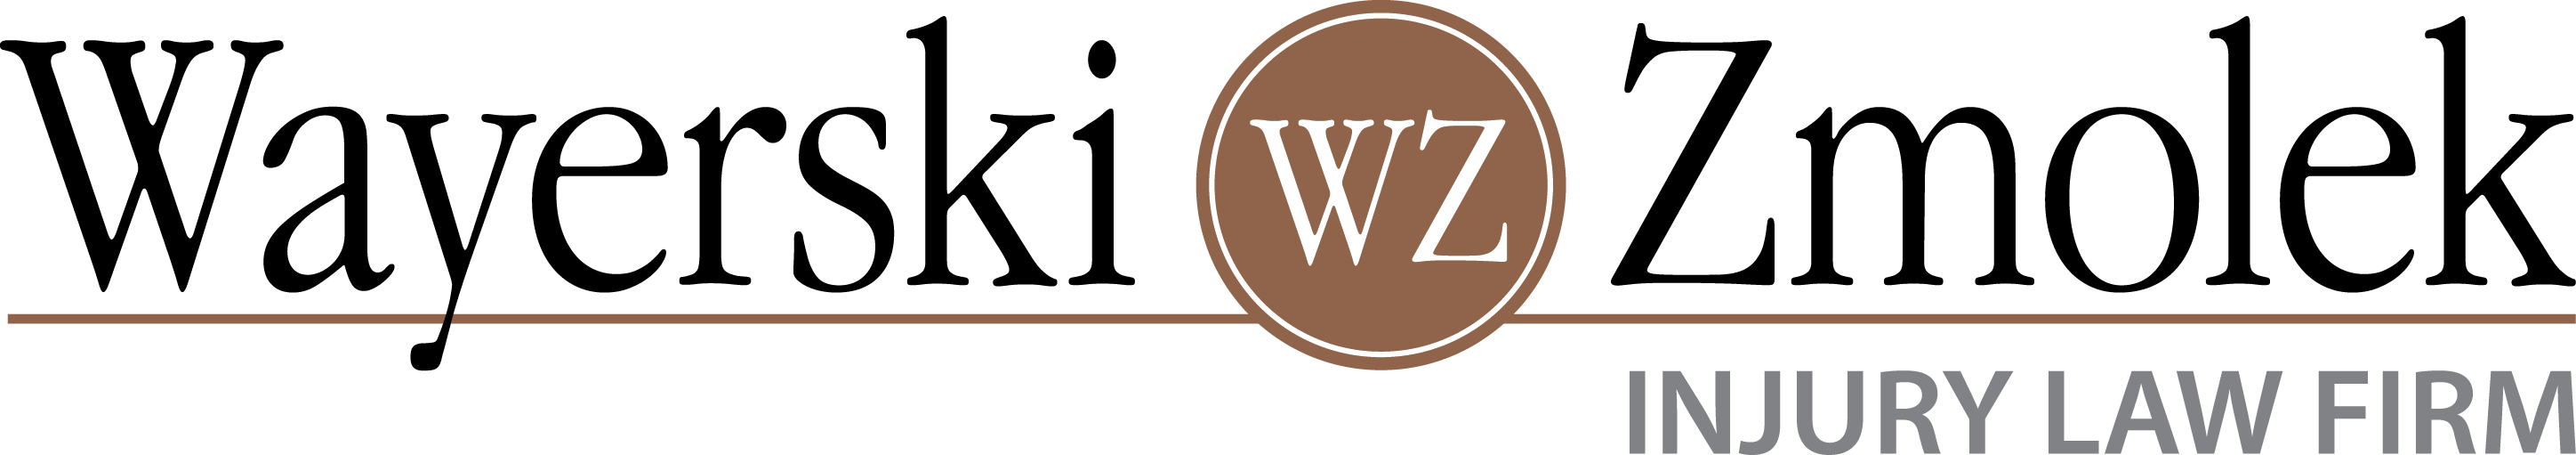 Wayerski Zmolek Injury Law Firm